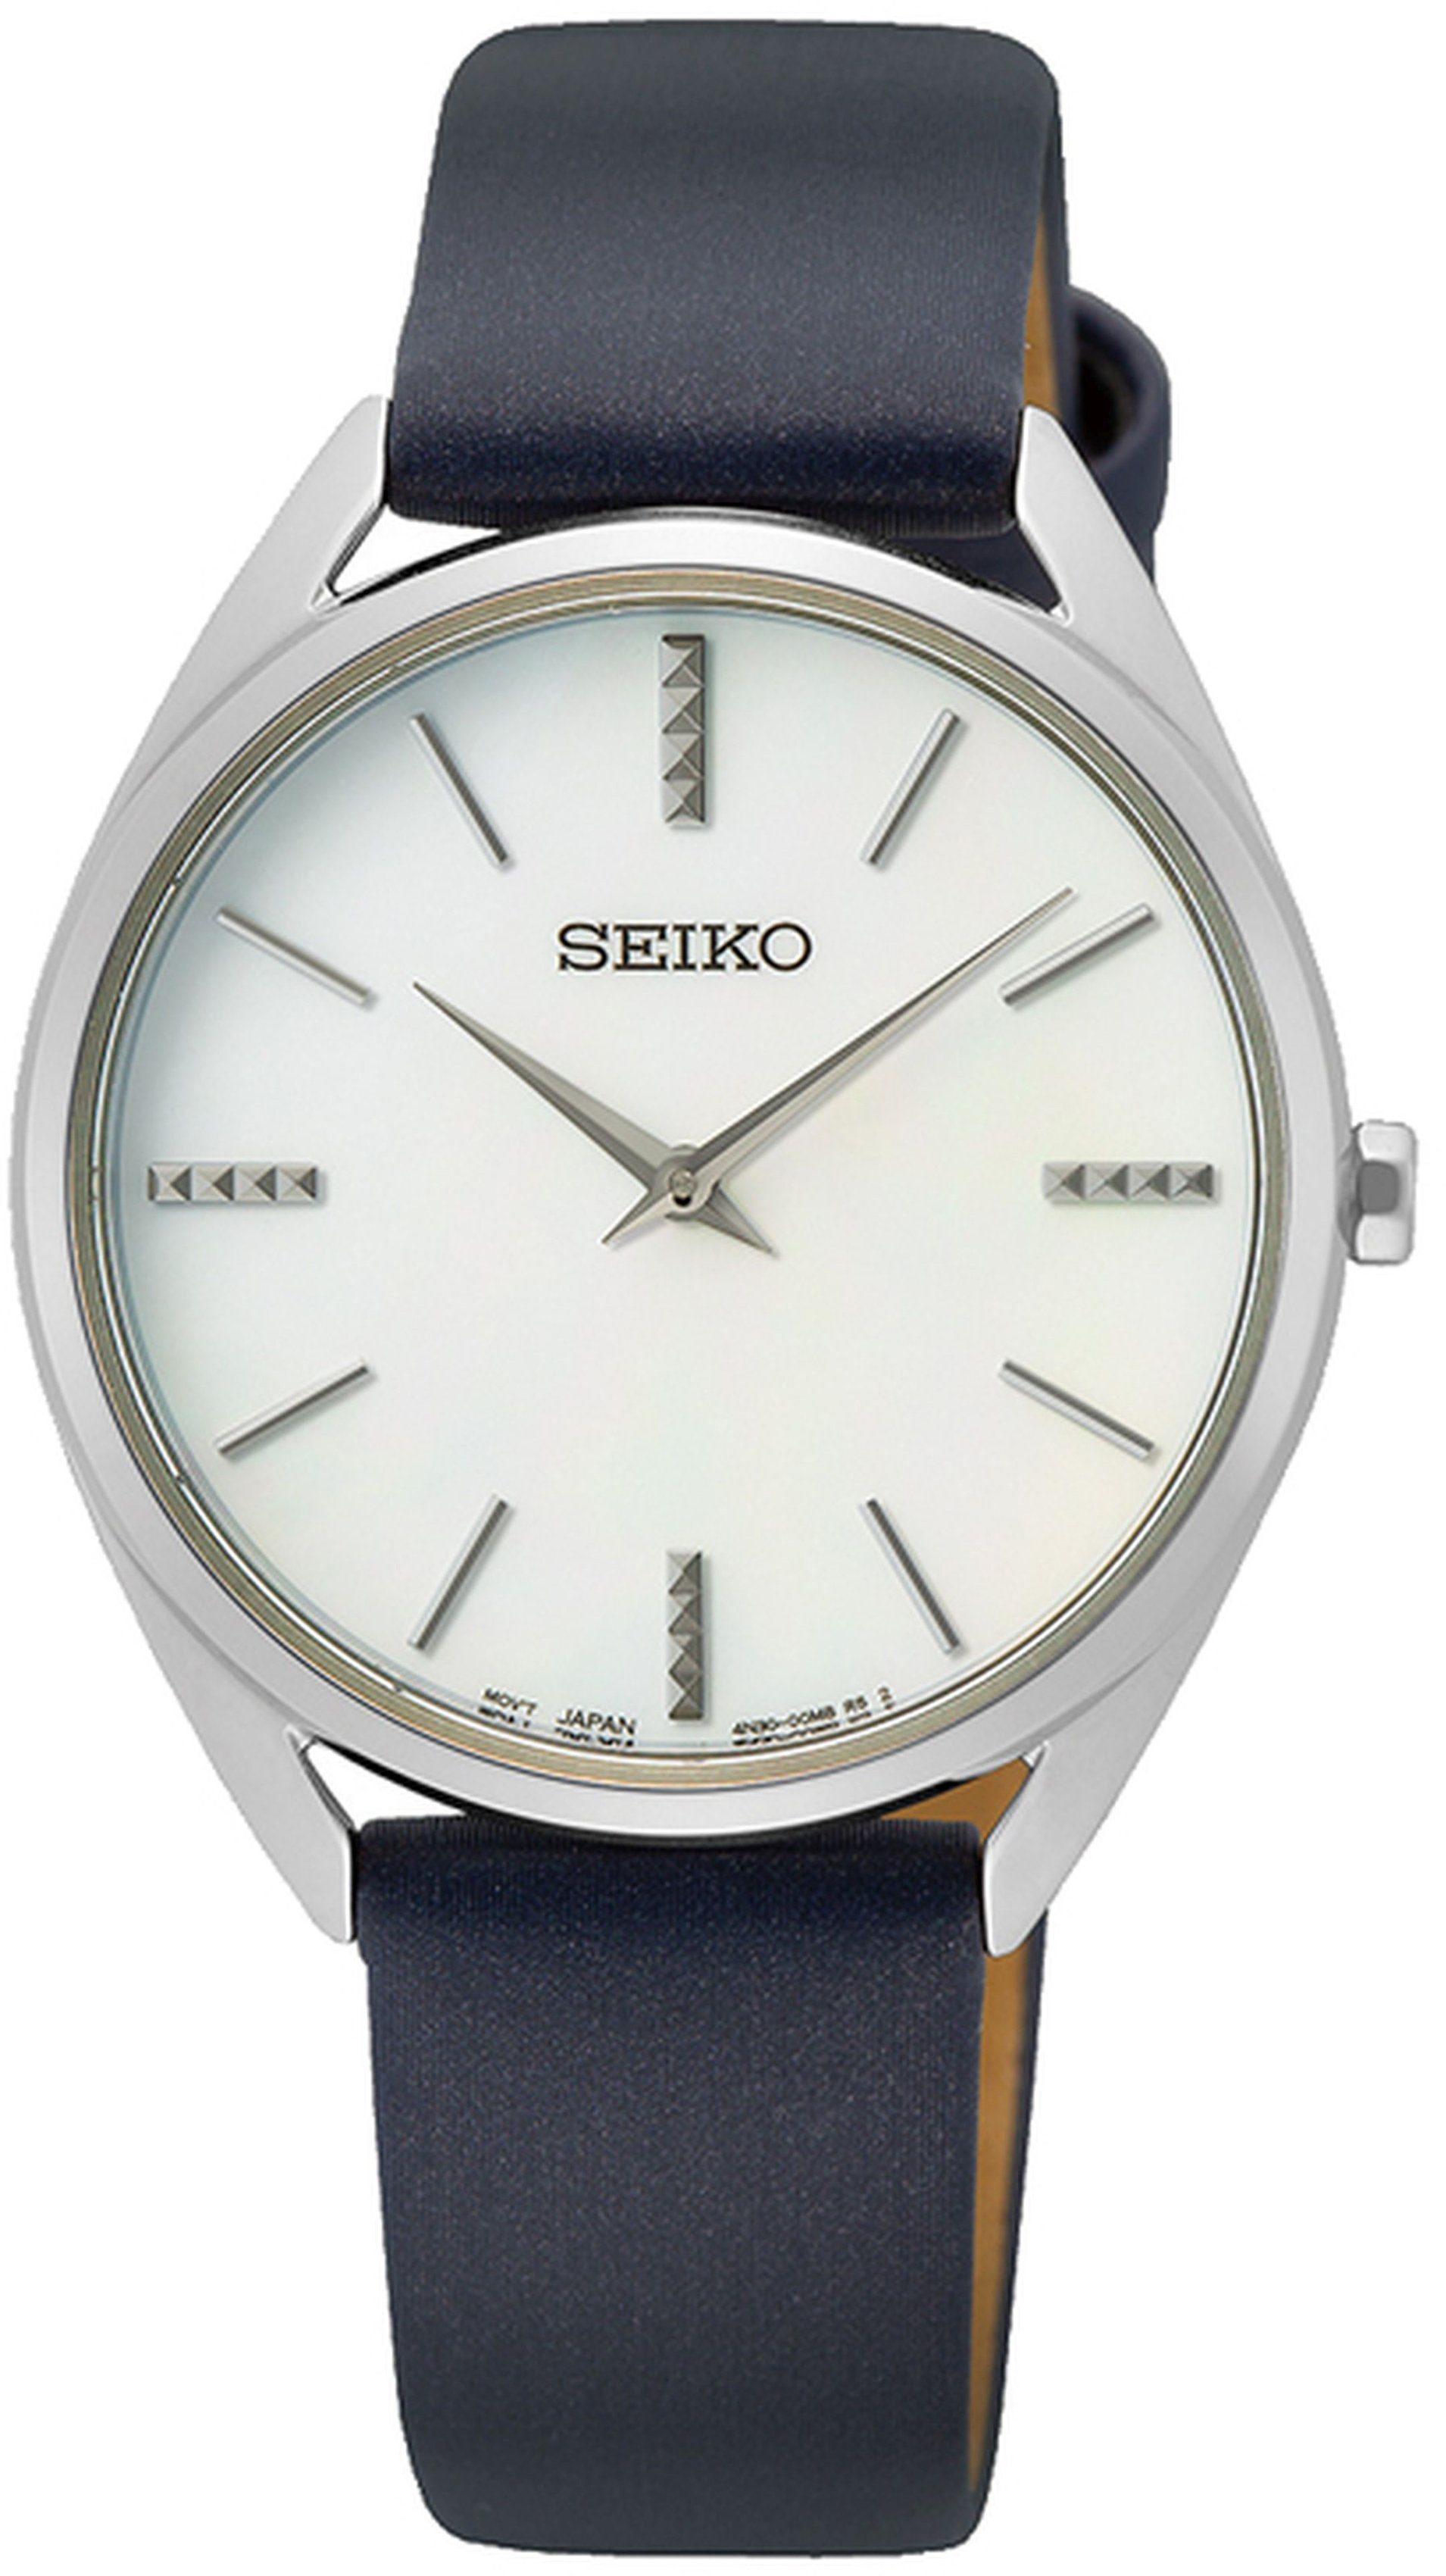 Seiko Quarzuhr SWR079P1, Armbanduhr, Damenuhr, Lederarmband